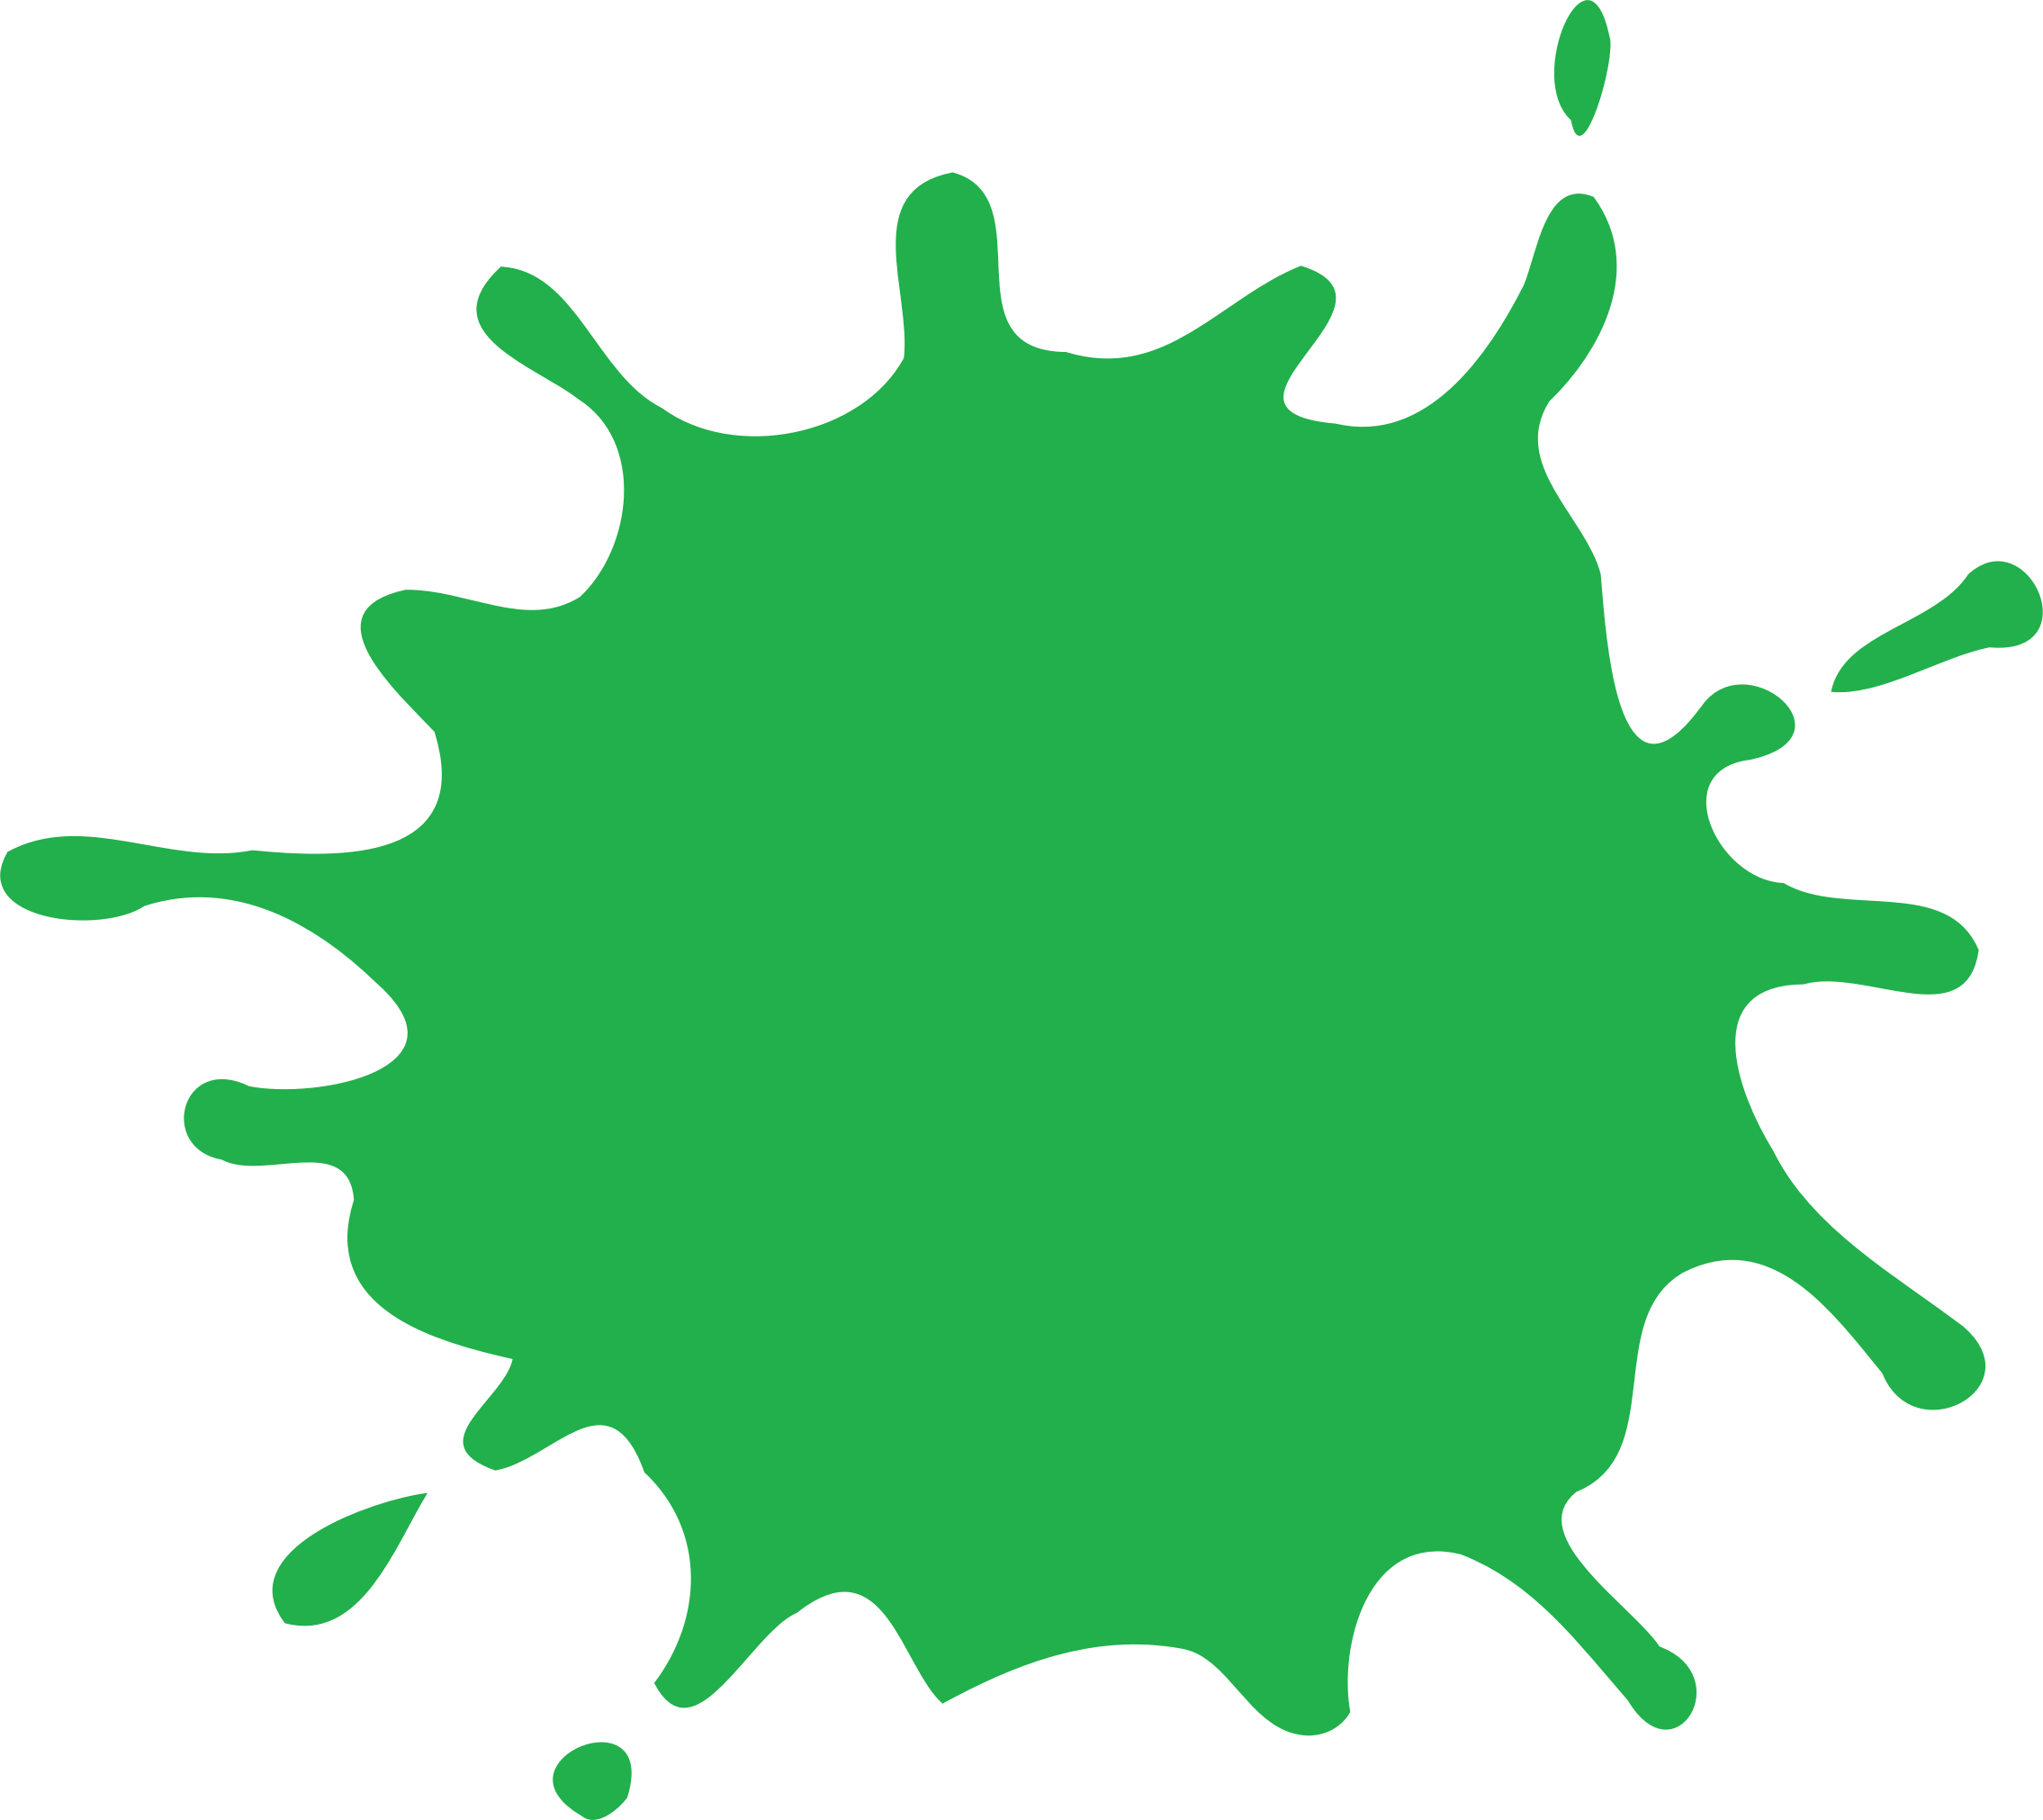 Green splat vector.